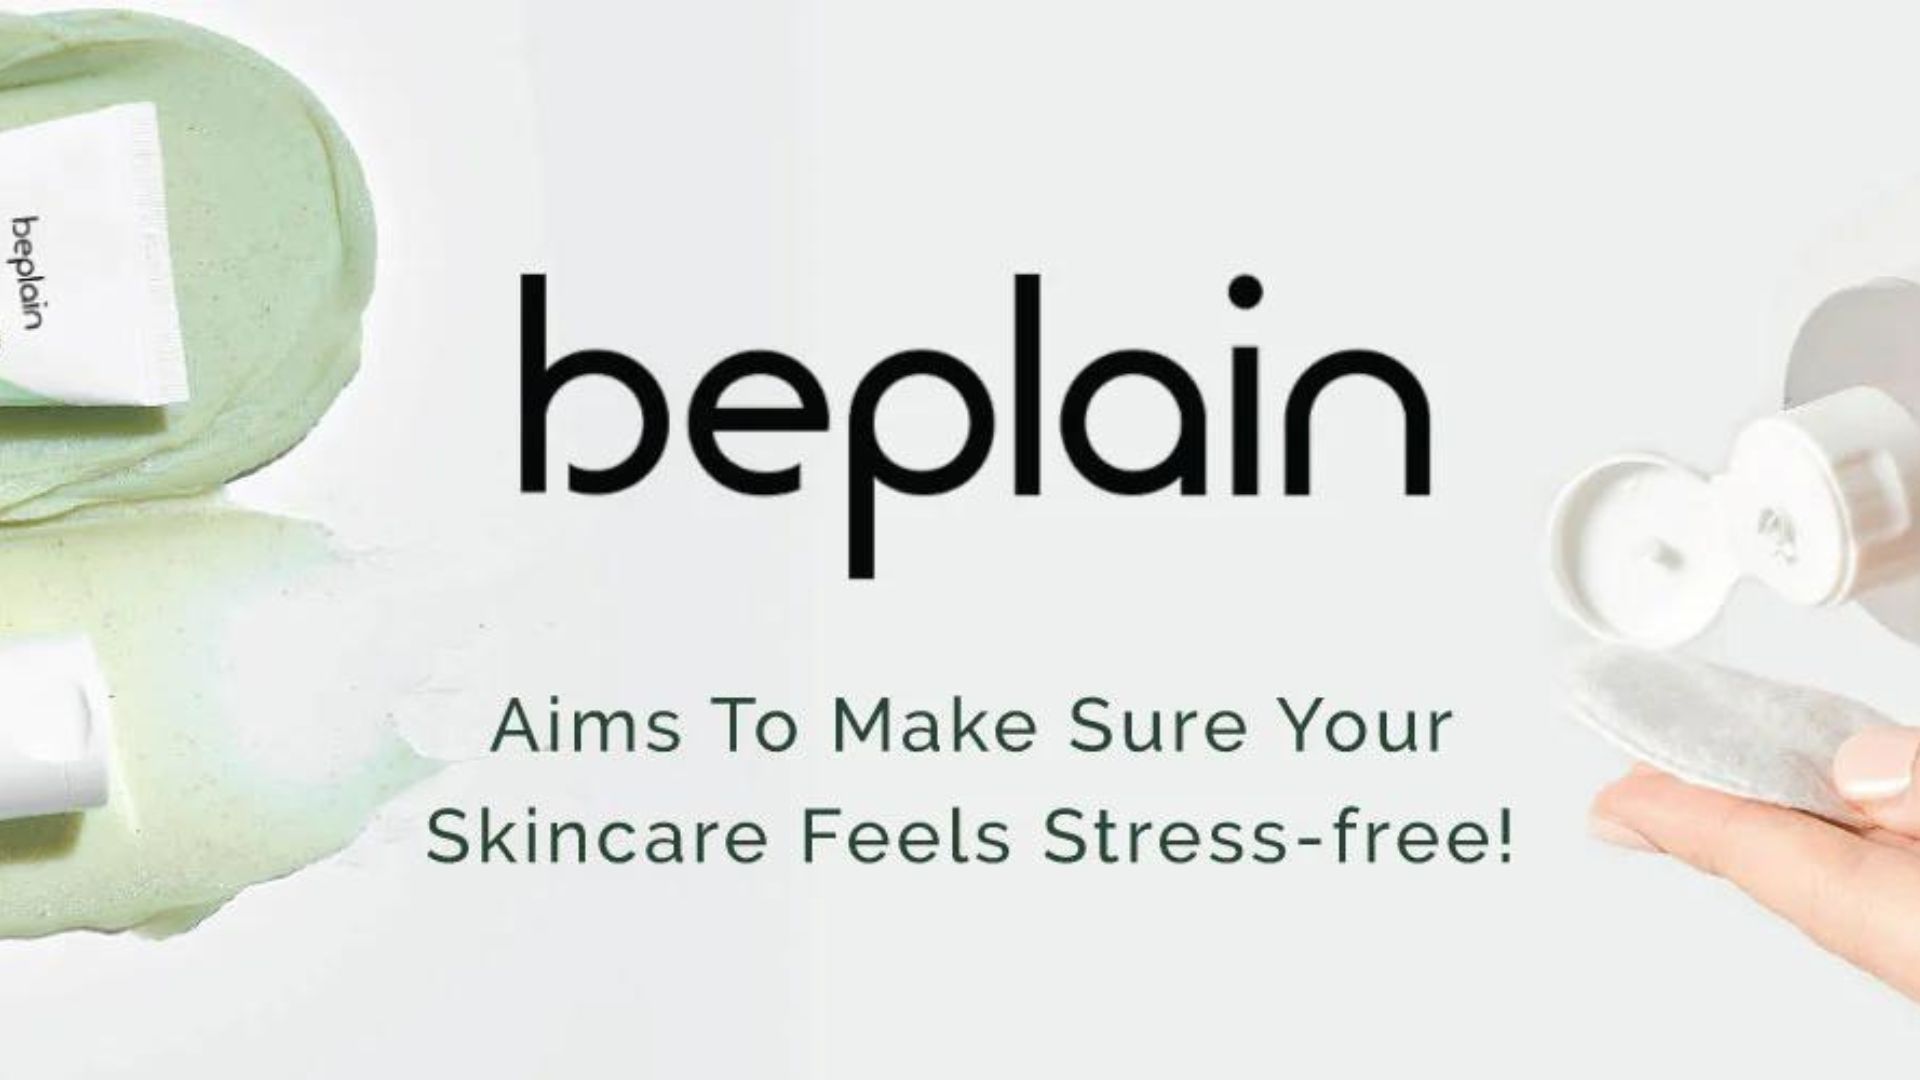 Beplain là một thương hiệu làm đẹp lành tính, thuần chay nổi tiếng (Nguồn: Internet)